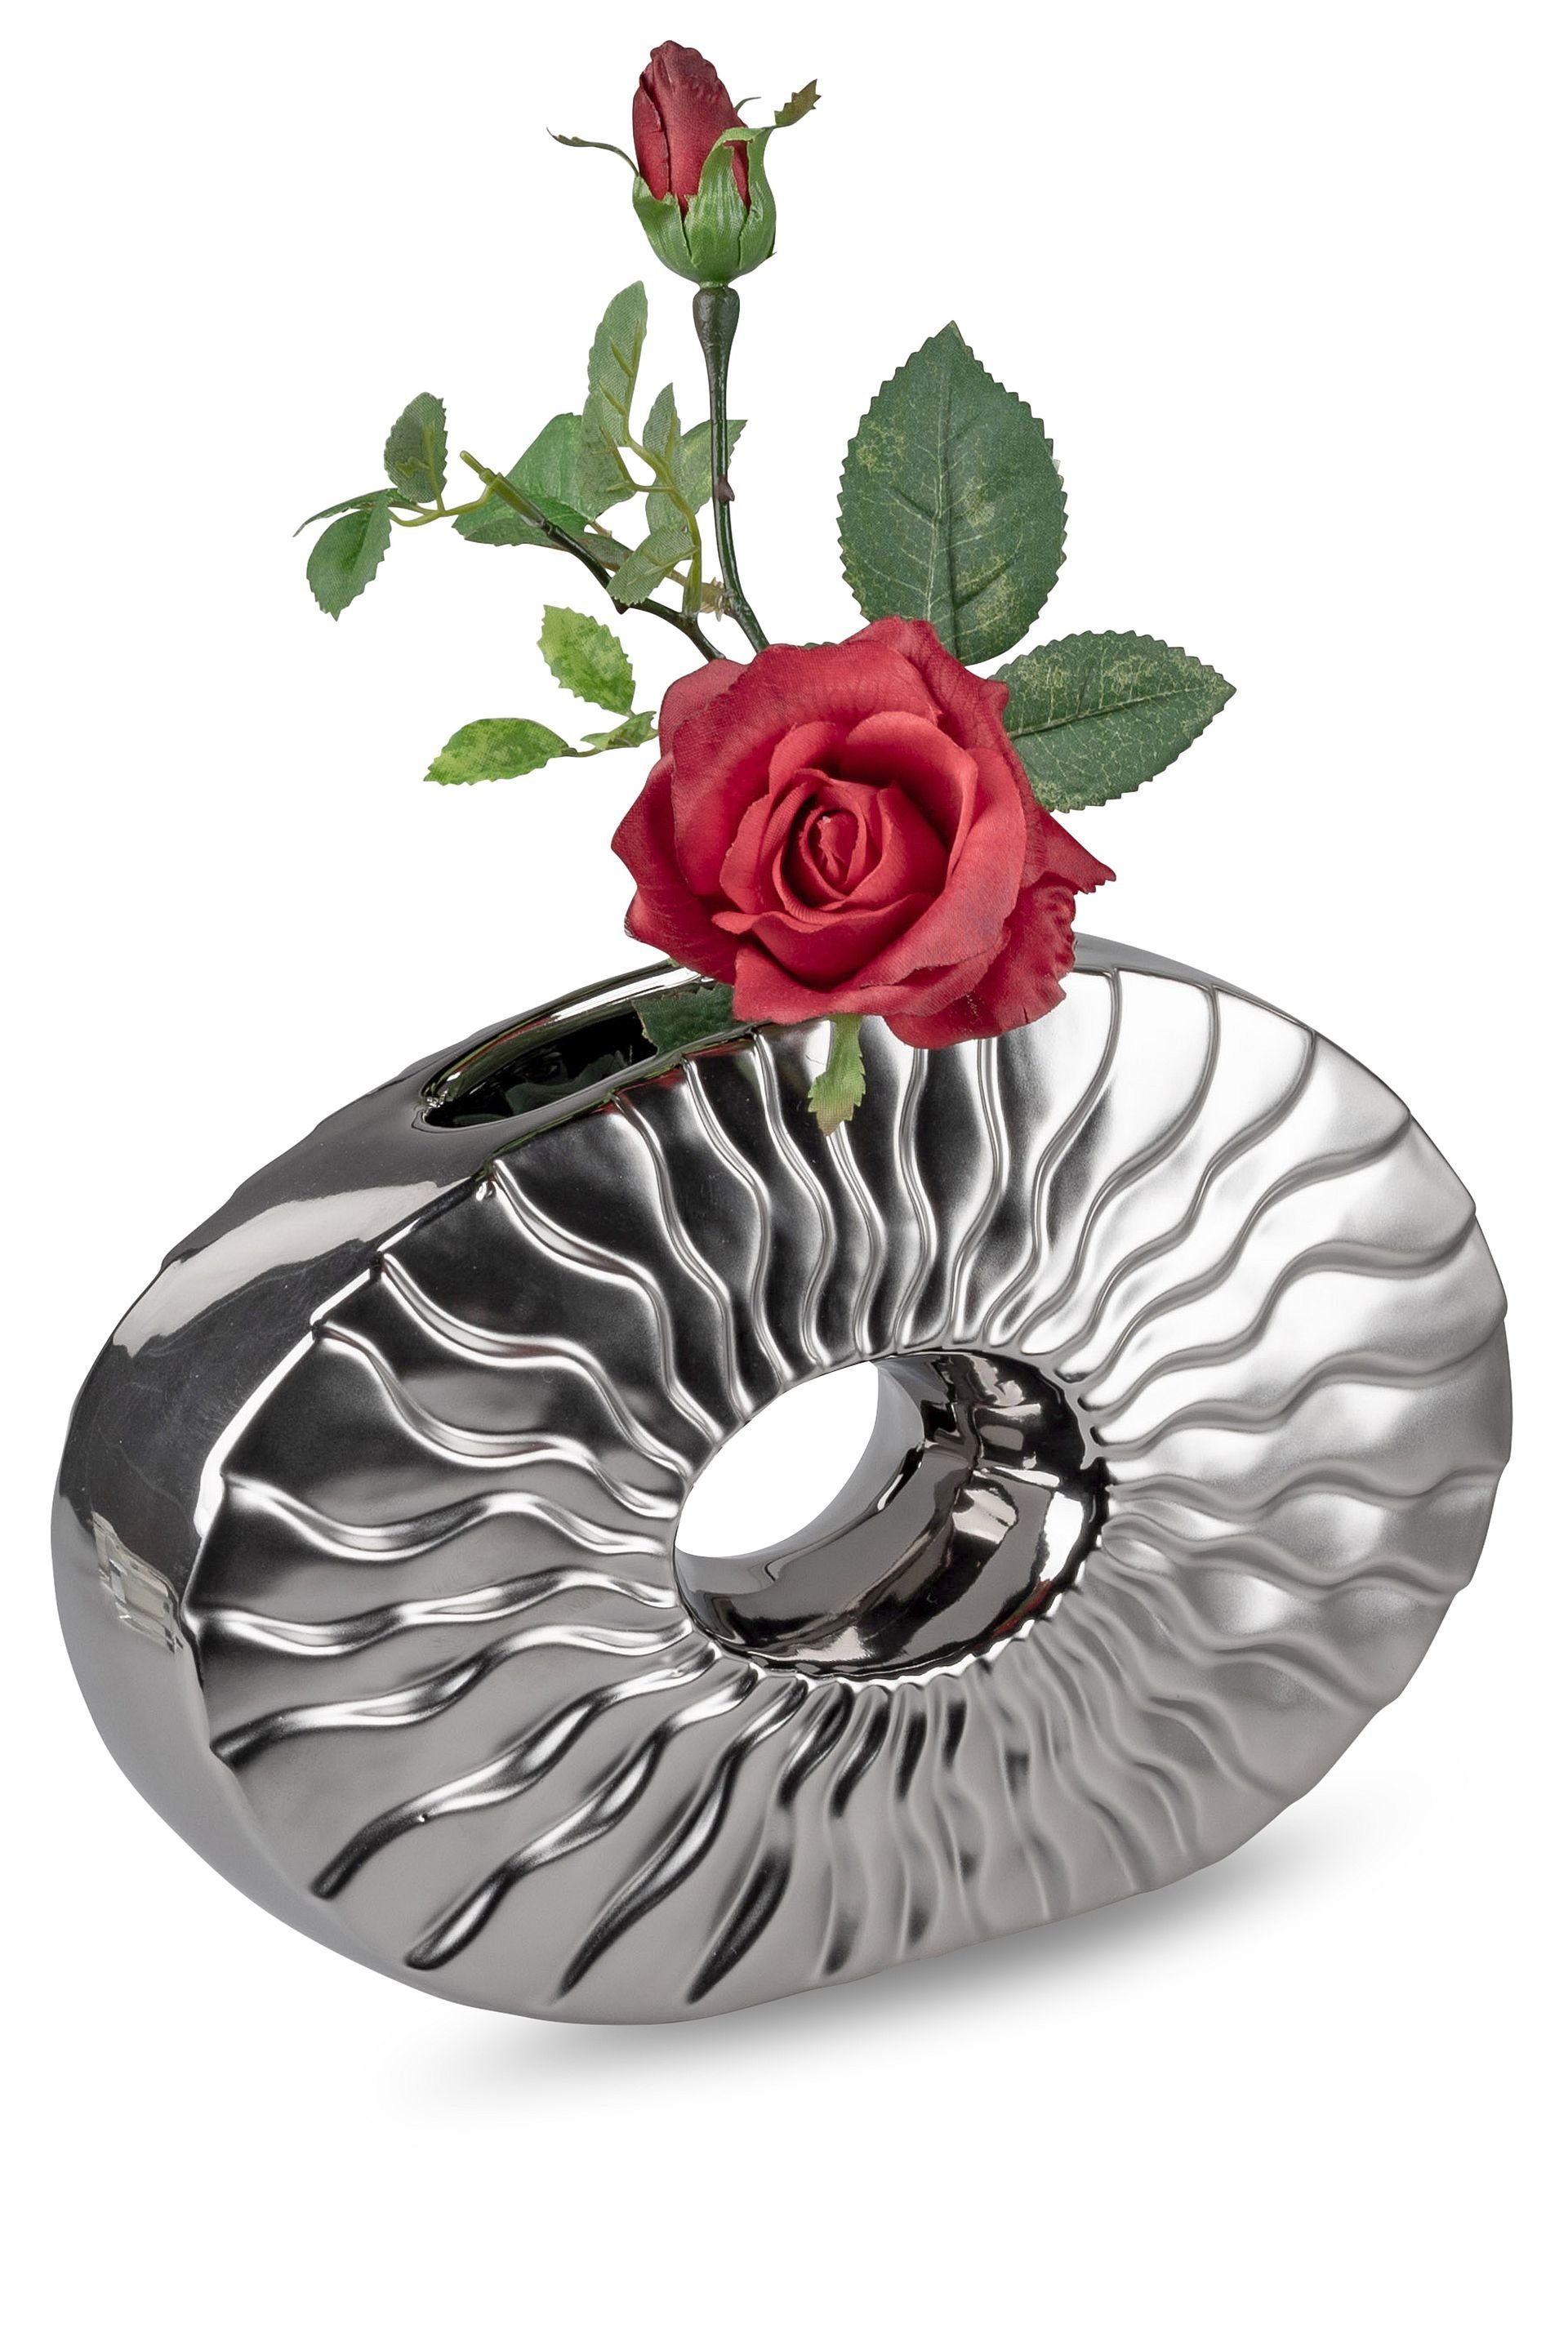 Small-Preis Dekovase Formano Vase Tischvase oval oder rund Silber matt / glänzend, aus Keramik